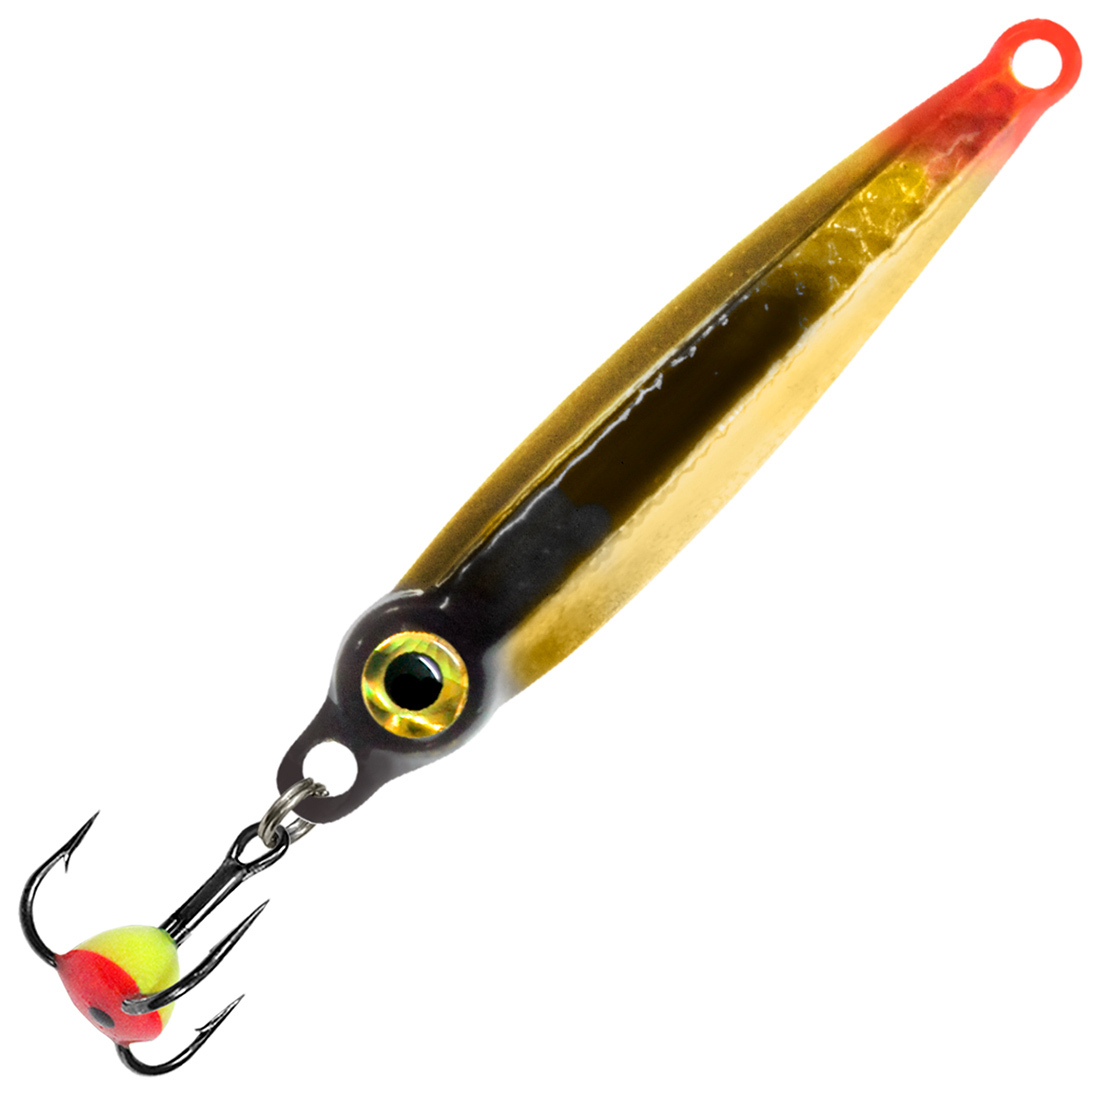 Блесна для рыбалки зимняя AQUA ОНЕГА 6,0g, цвет 02 (золото, черный металлик) 1 штука.